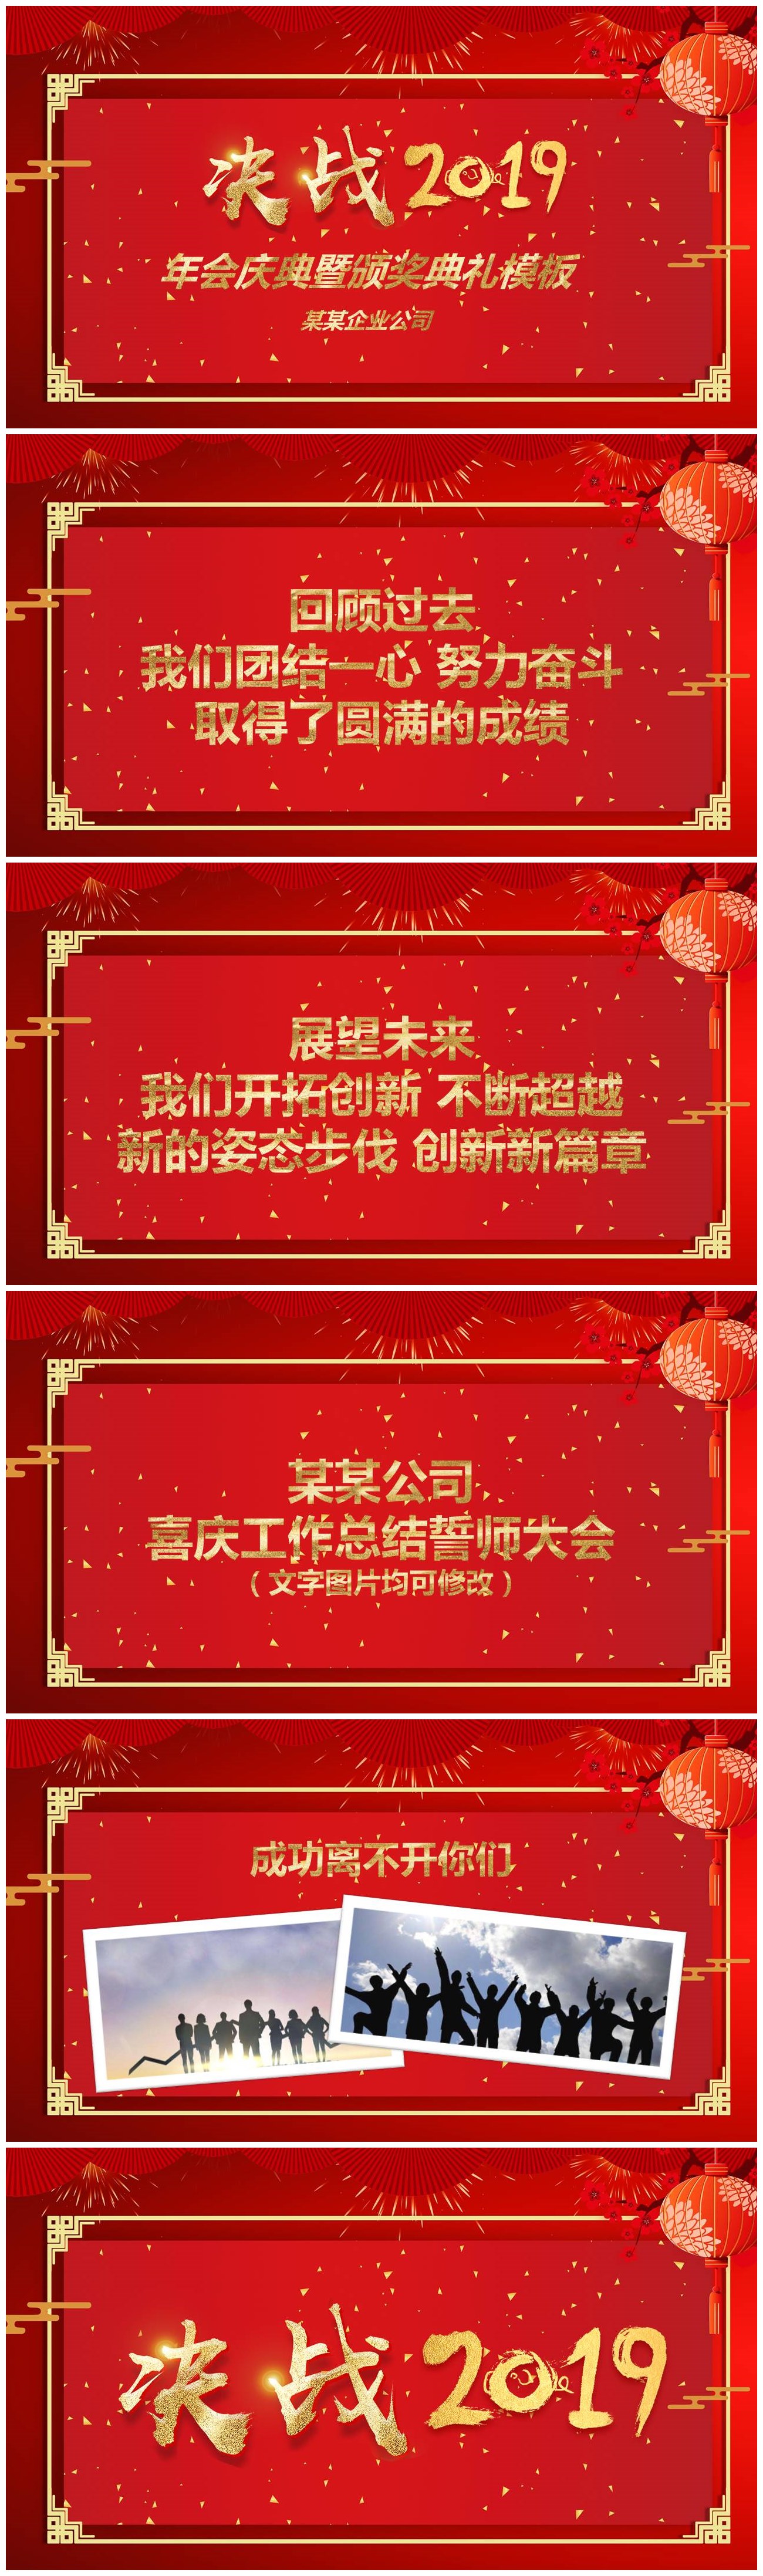 傳統中國風2019年會慶典暨頒獎典禮ppt模板